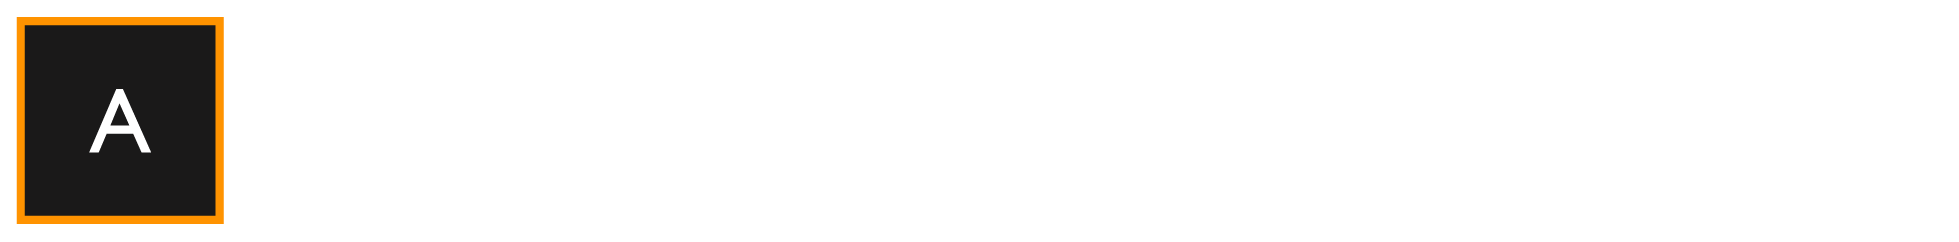 administer_group_logo